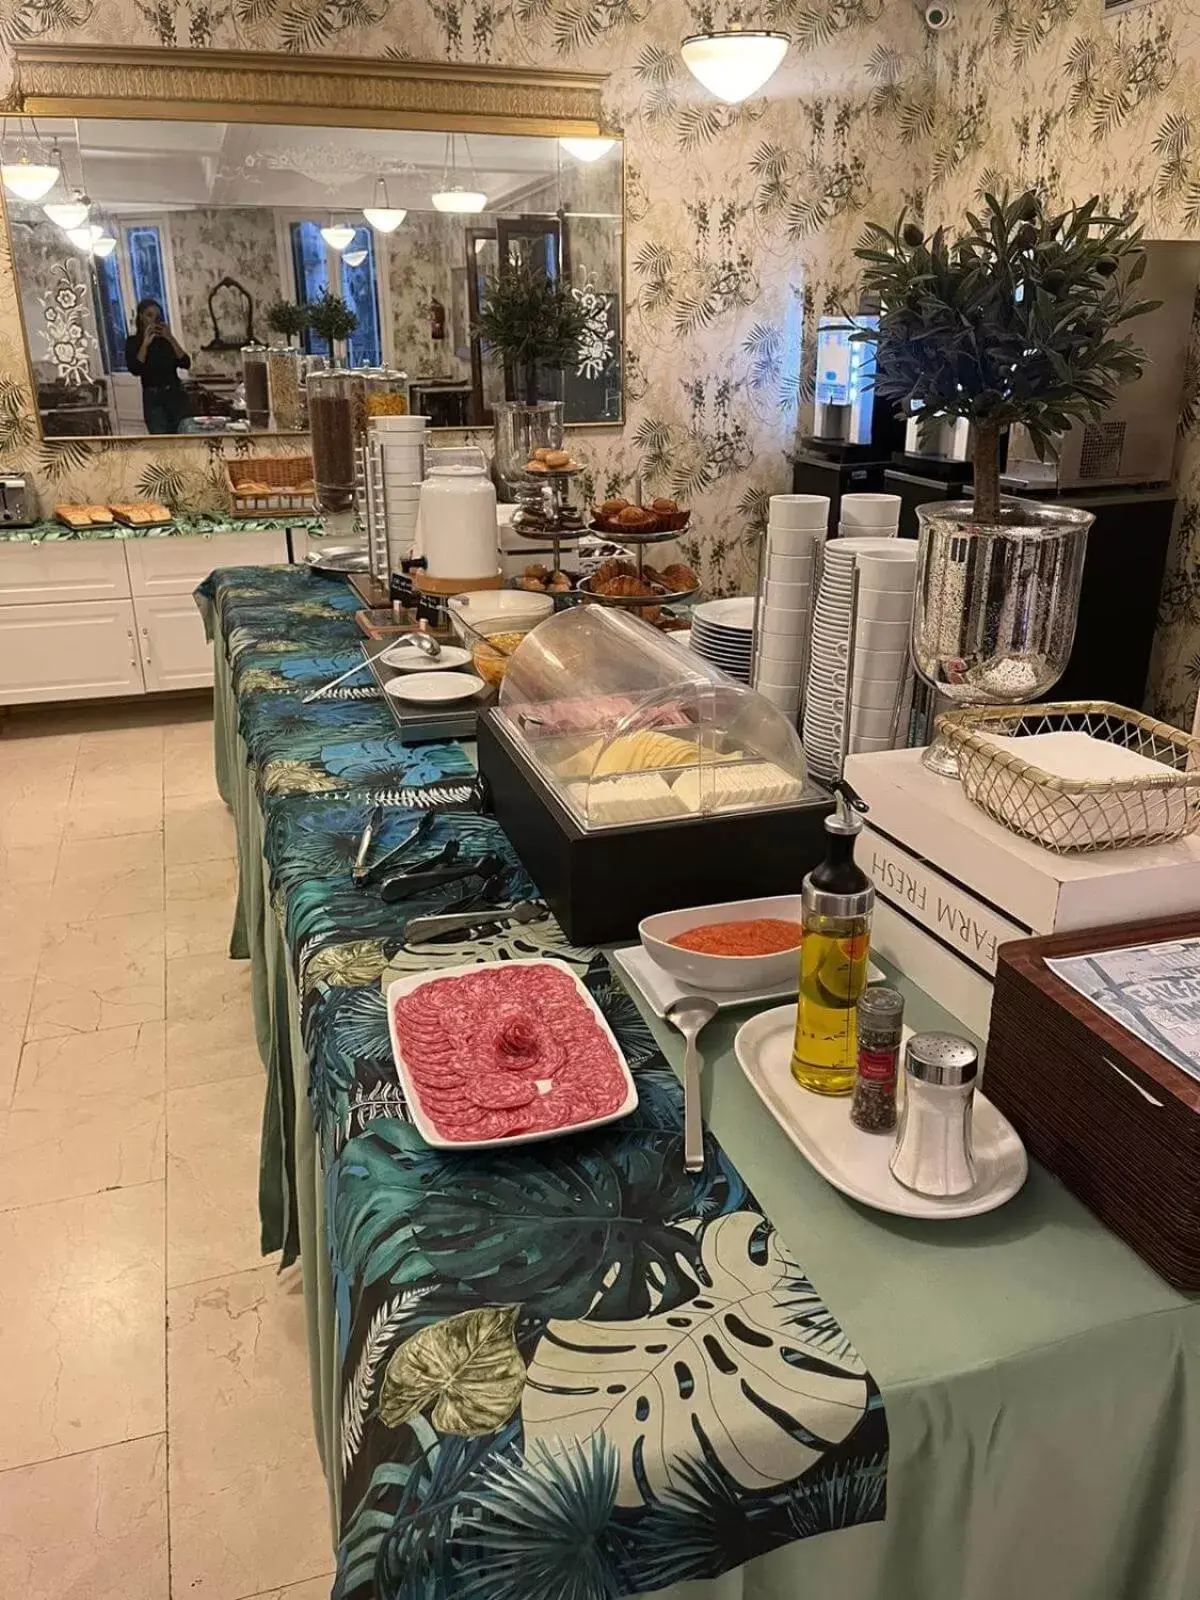 Buffet breakfast in Hotel Lloret Ramblas